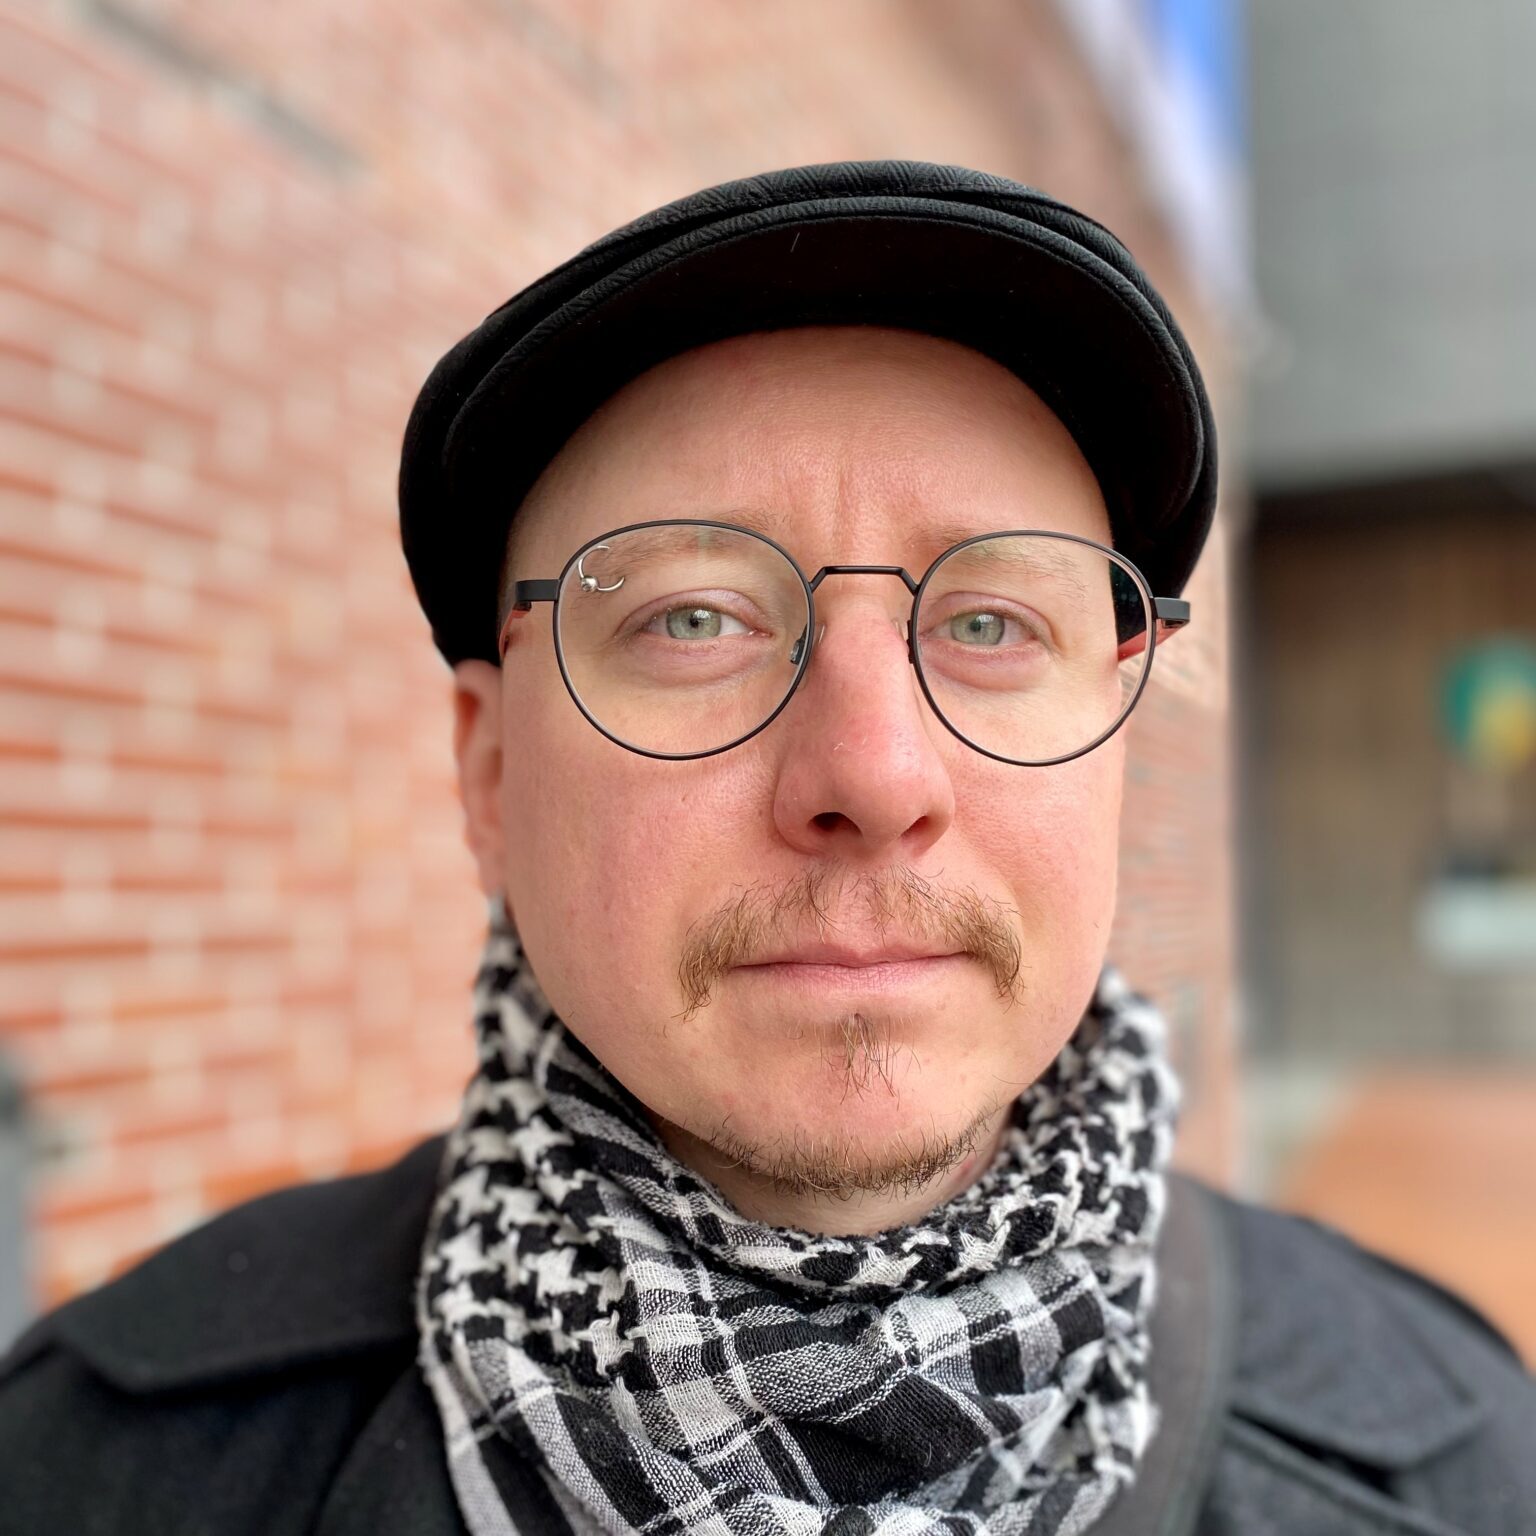 Man with glassess, hat and mustasch. Mikko Röman.